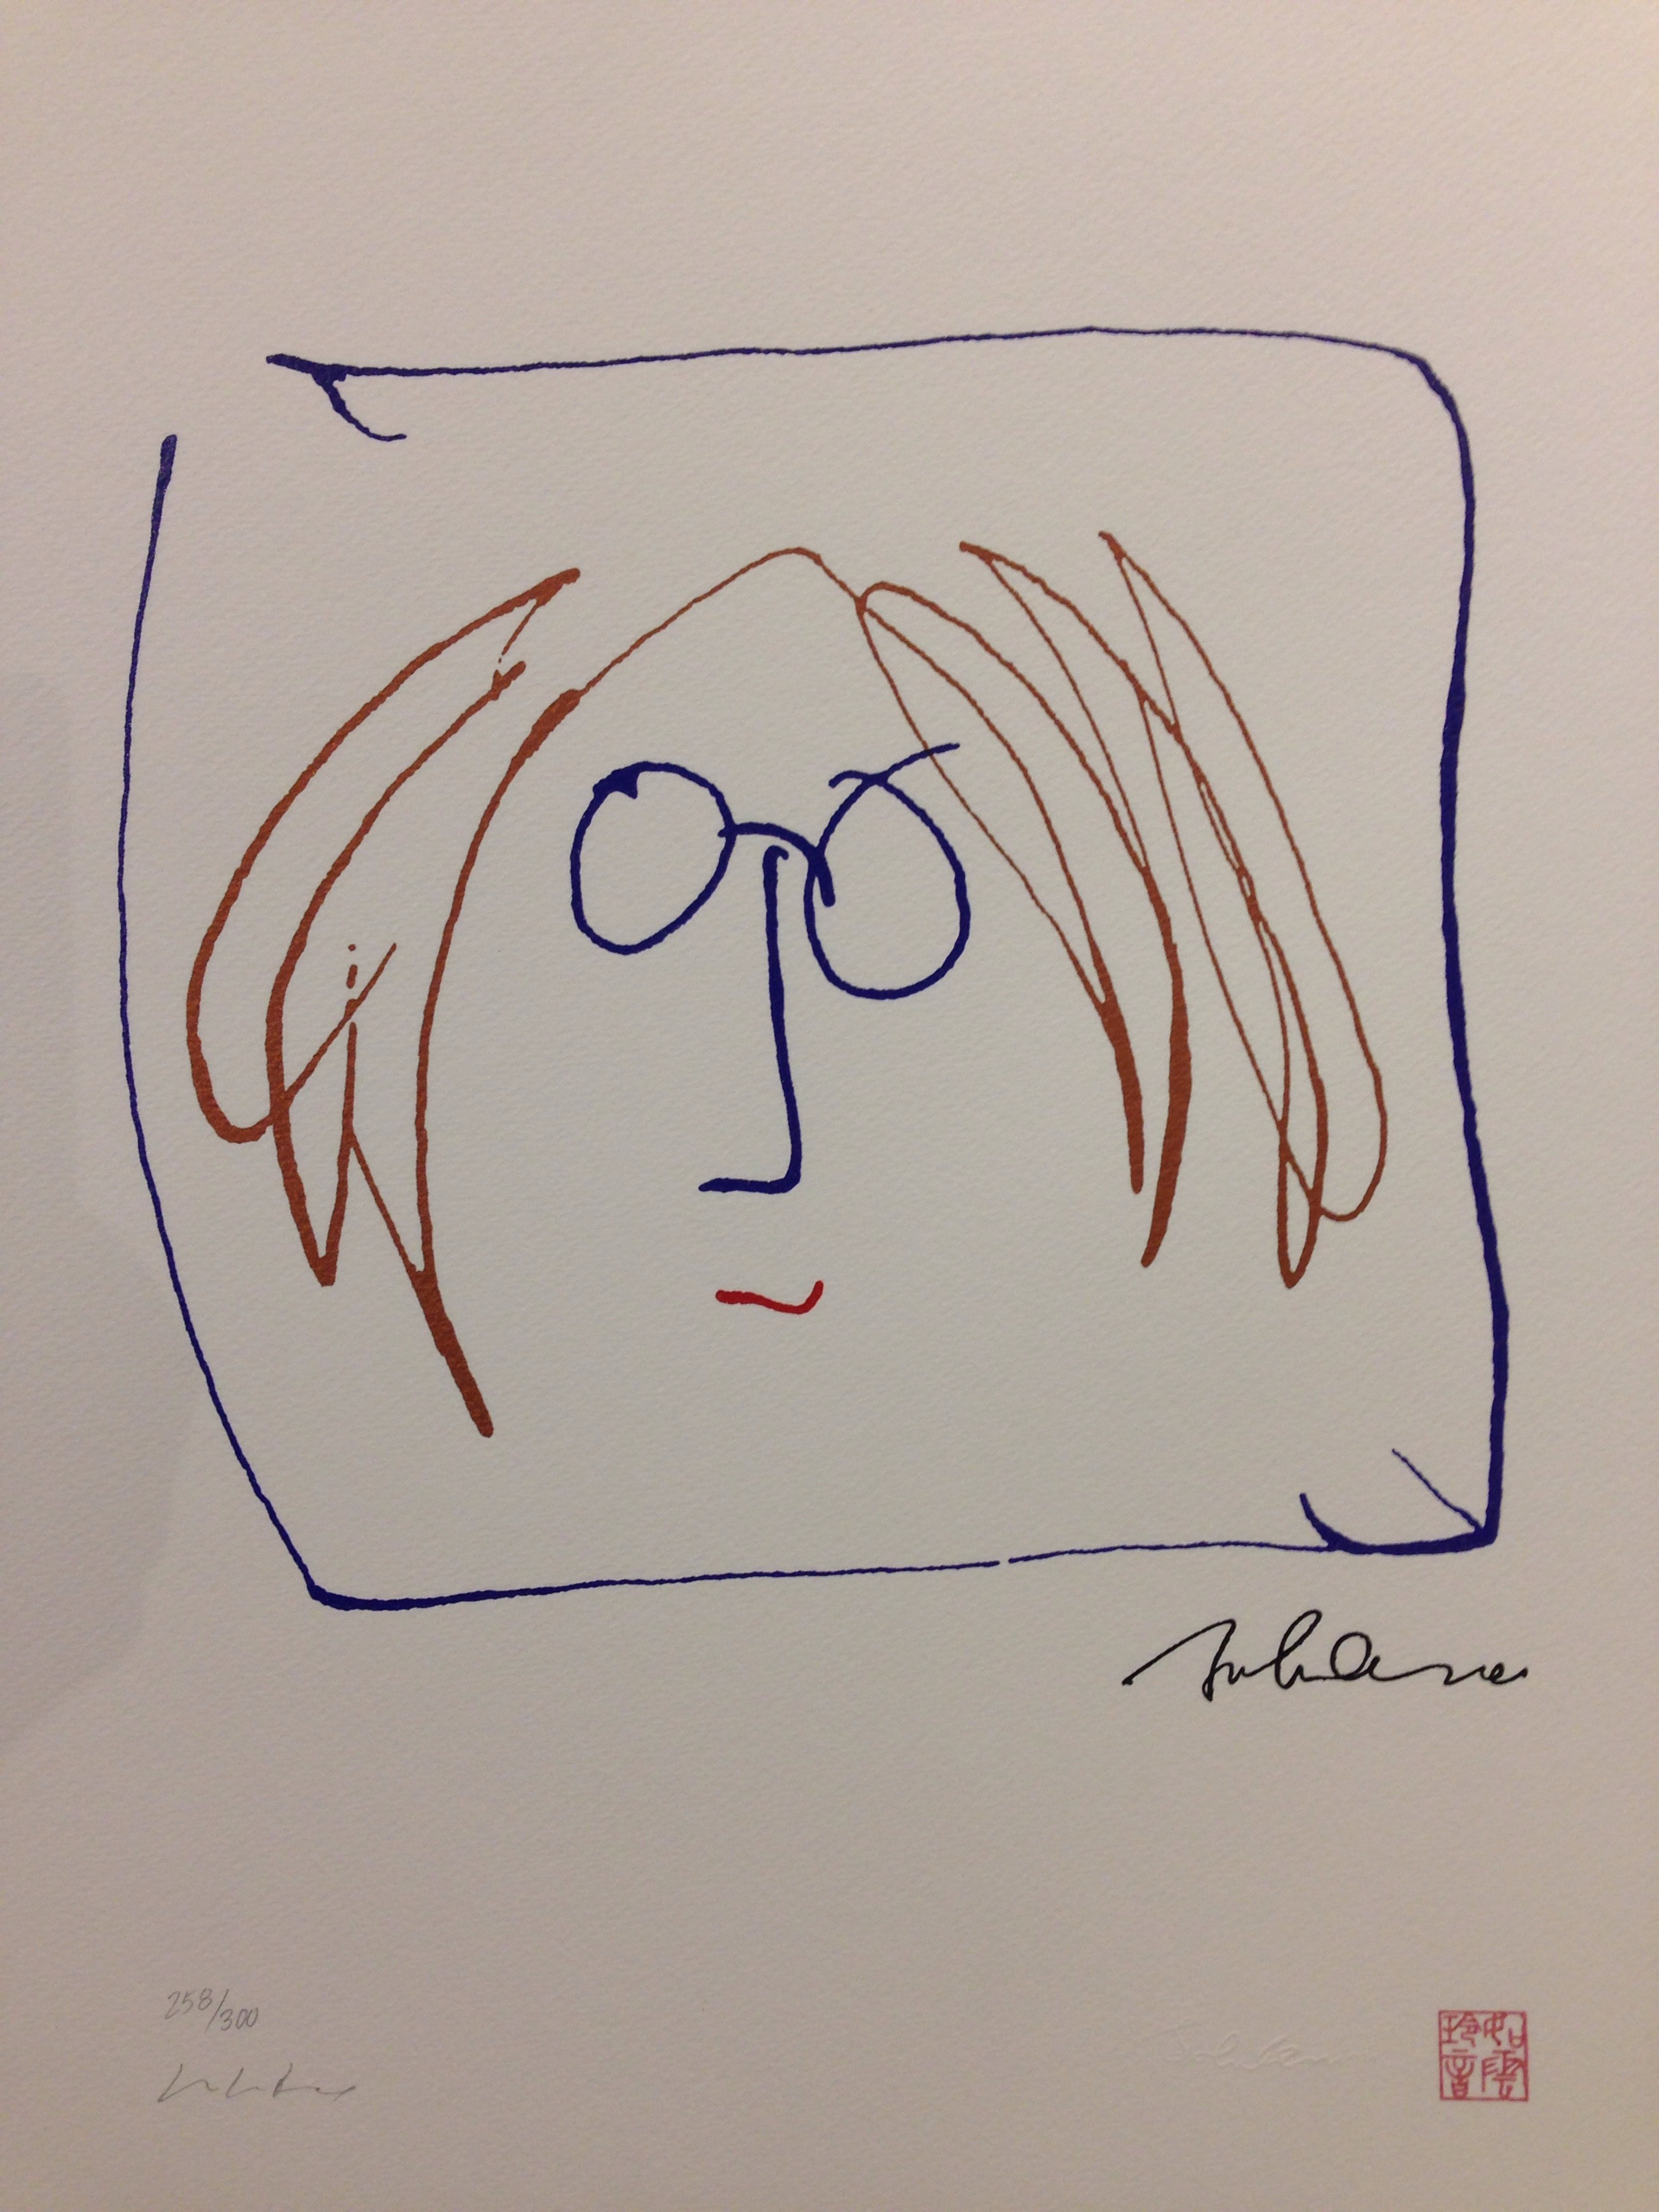 Self-Portrait by John Lennon